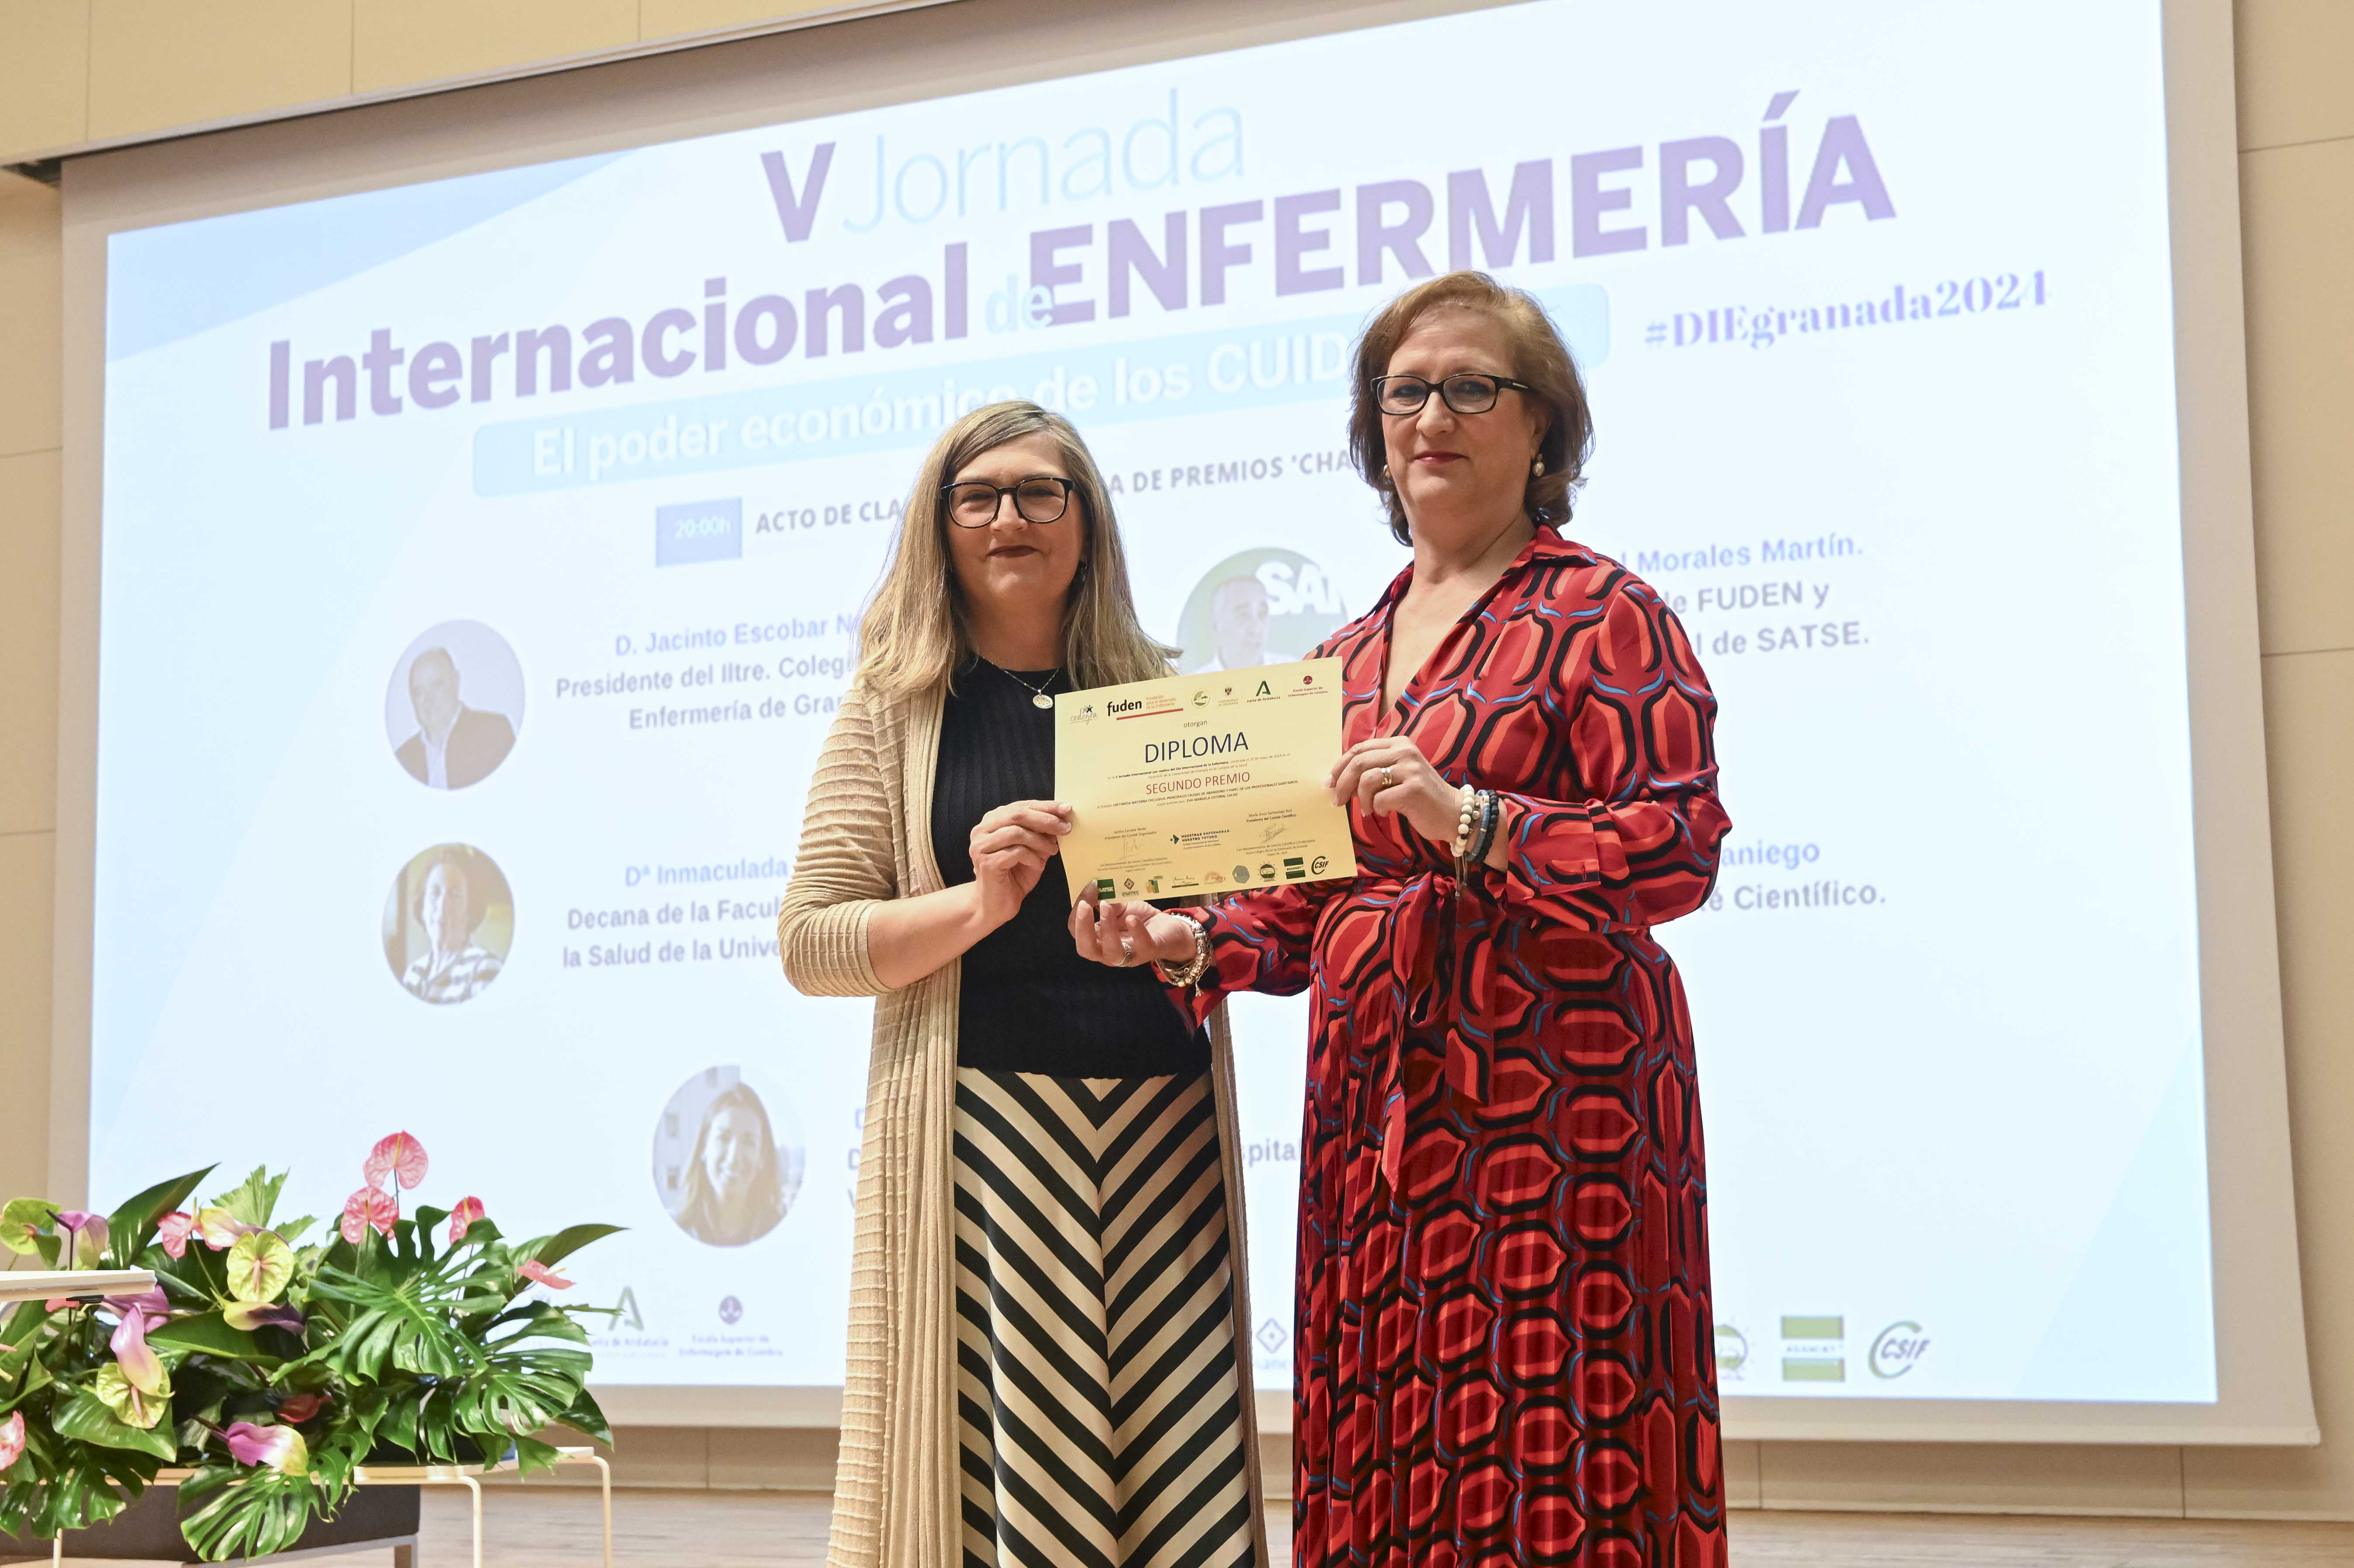 Eva Manuela Cotobal, matrona del Hospital Universitario de Jerez galardonada en la V Jornada Internacional de Enfermería.